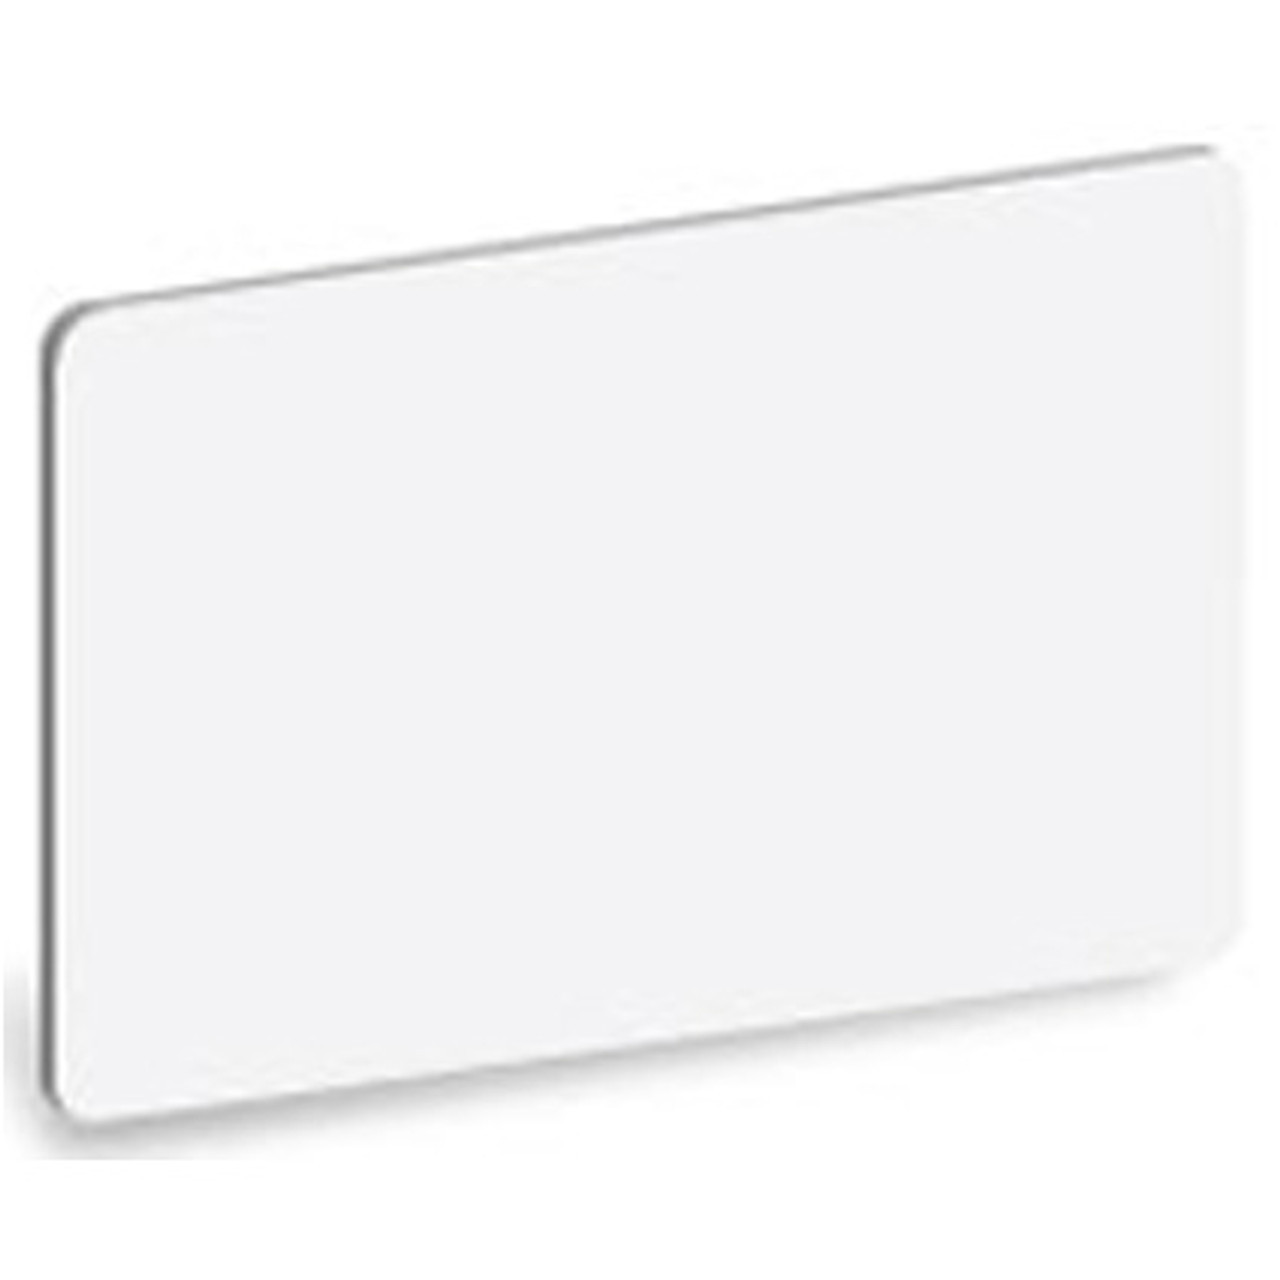 Blank CR80/30 PVC Cards - Qty. 500